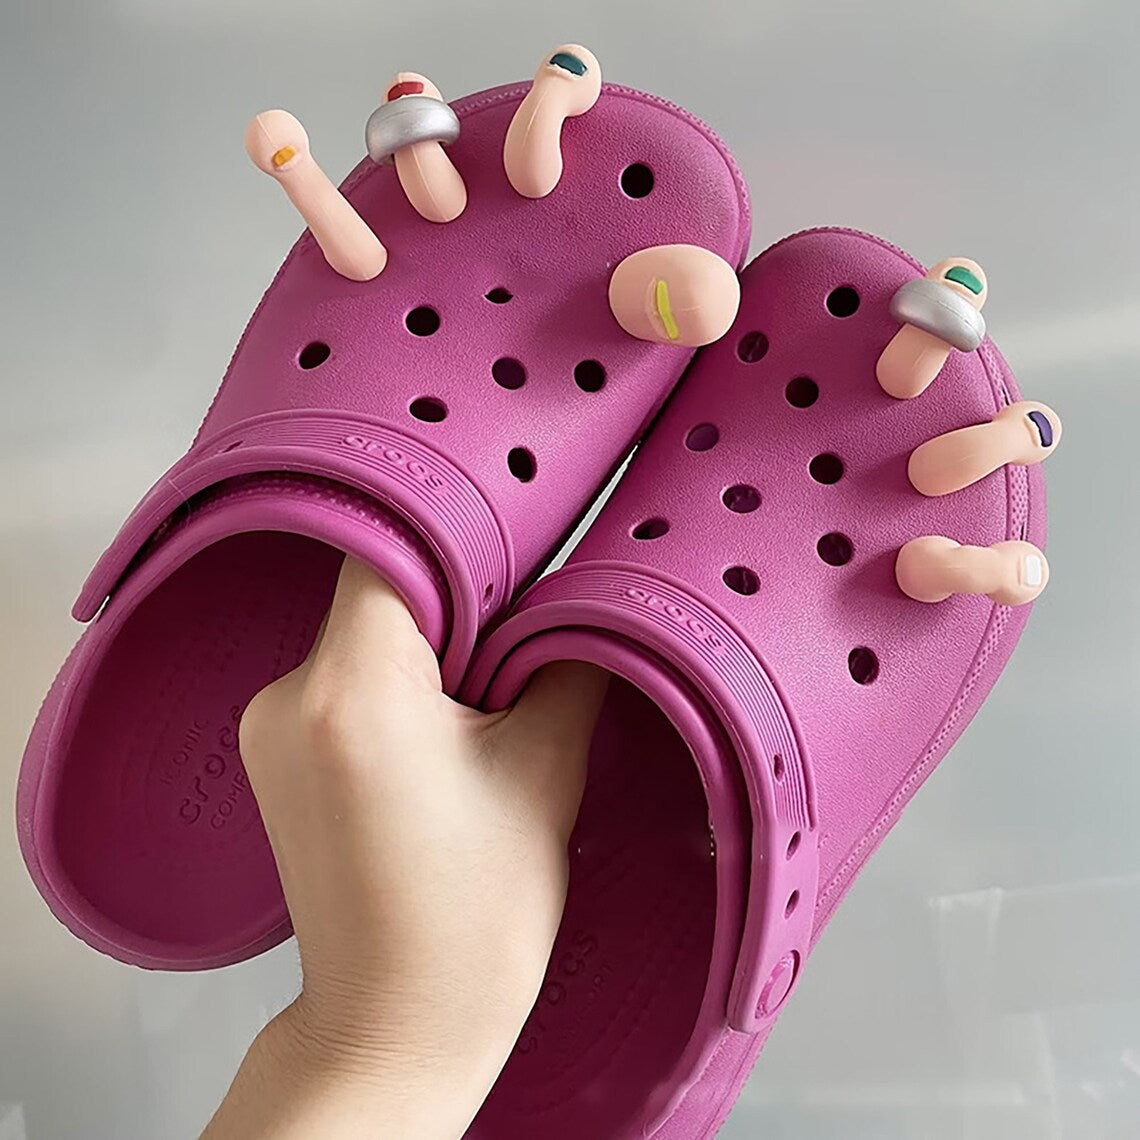 crocs on feet